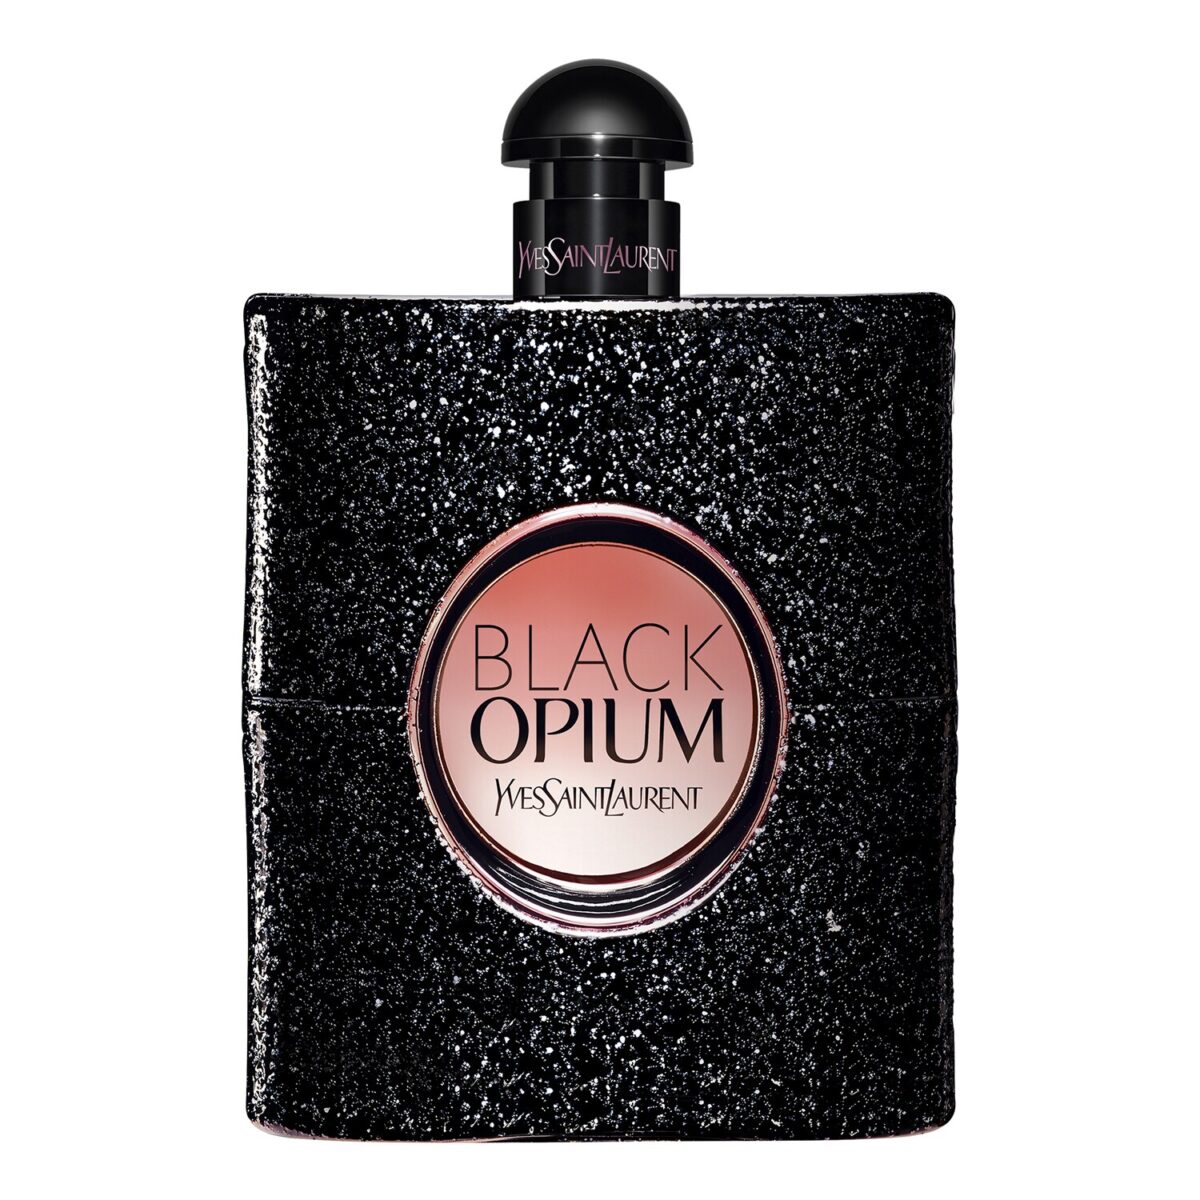 black opium Yves Saint Laurent profumi